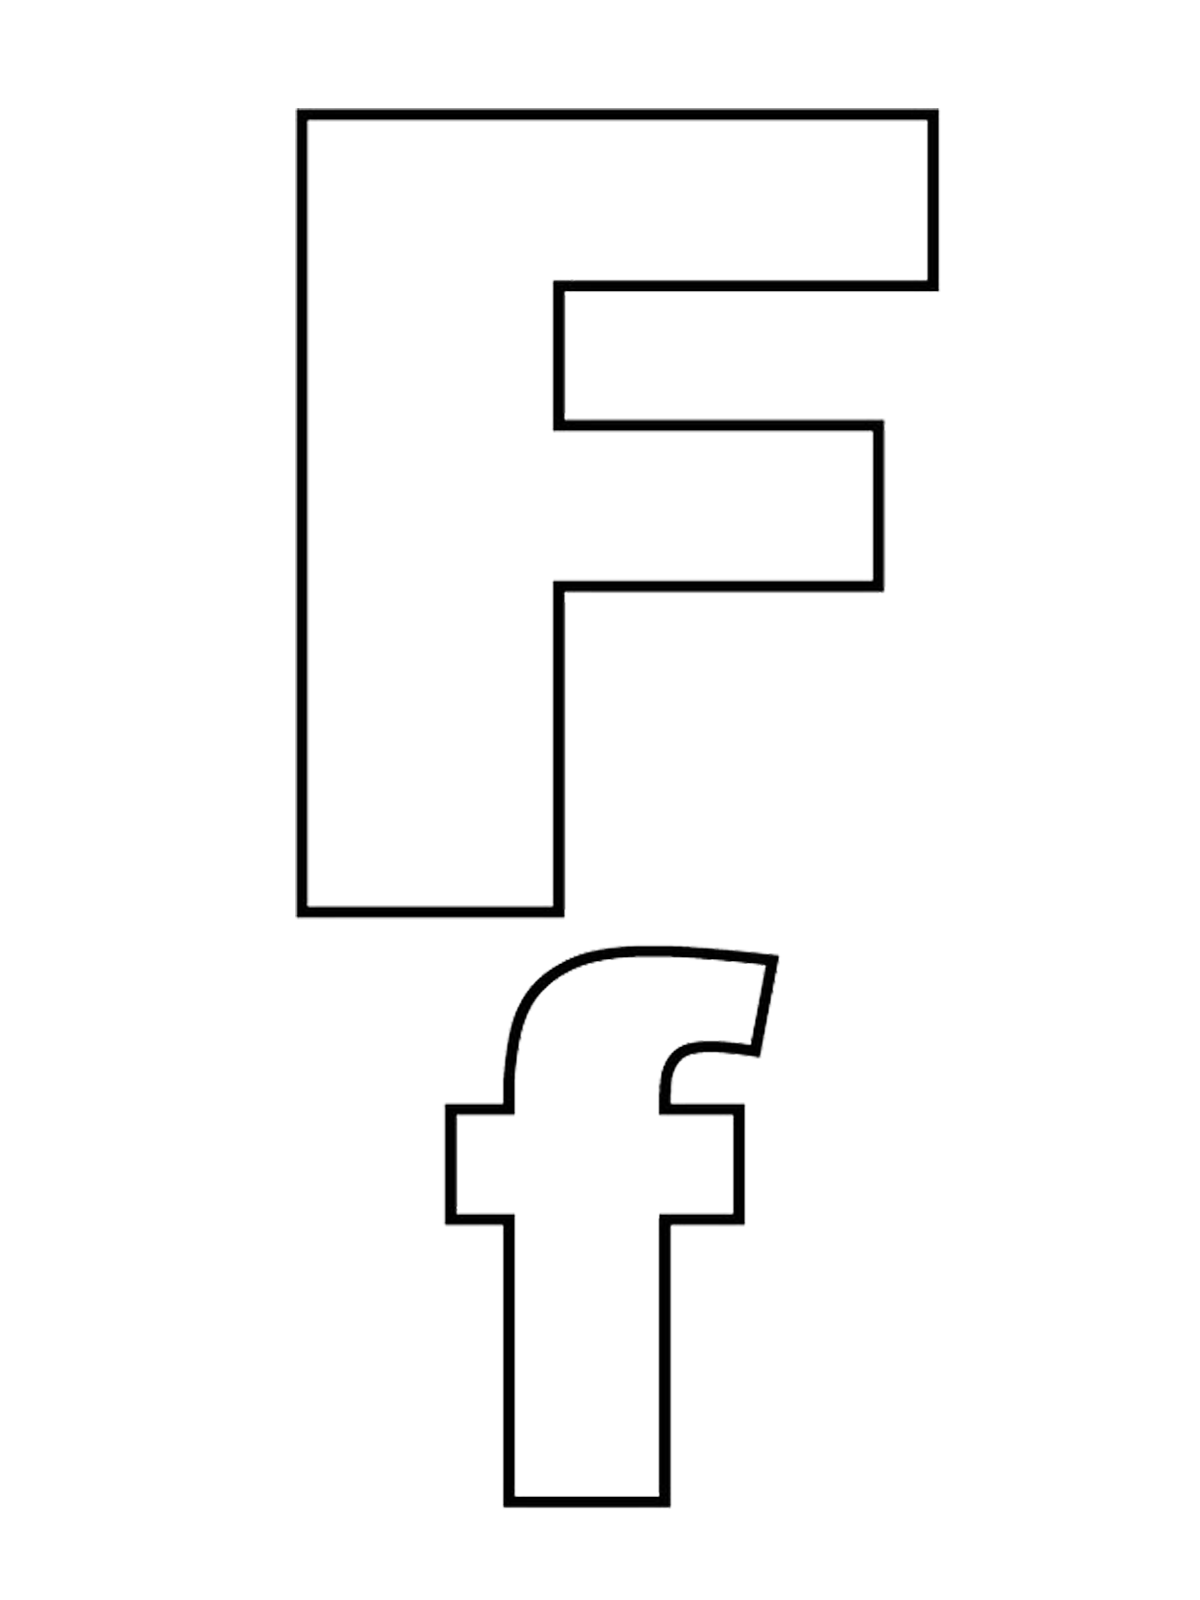 Lettere e numeri - Lettera F stampato maiuscolo e minuscolo